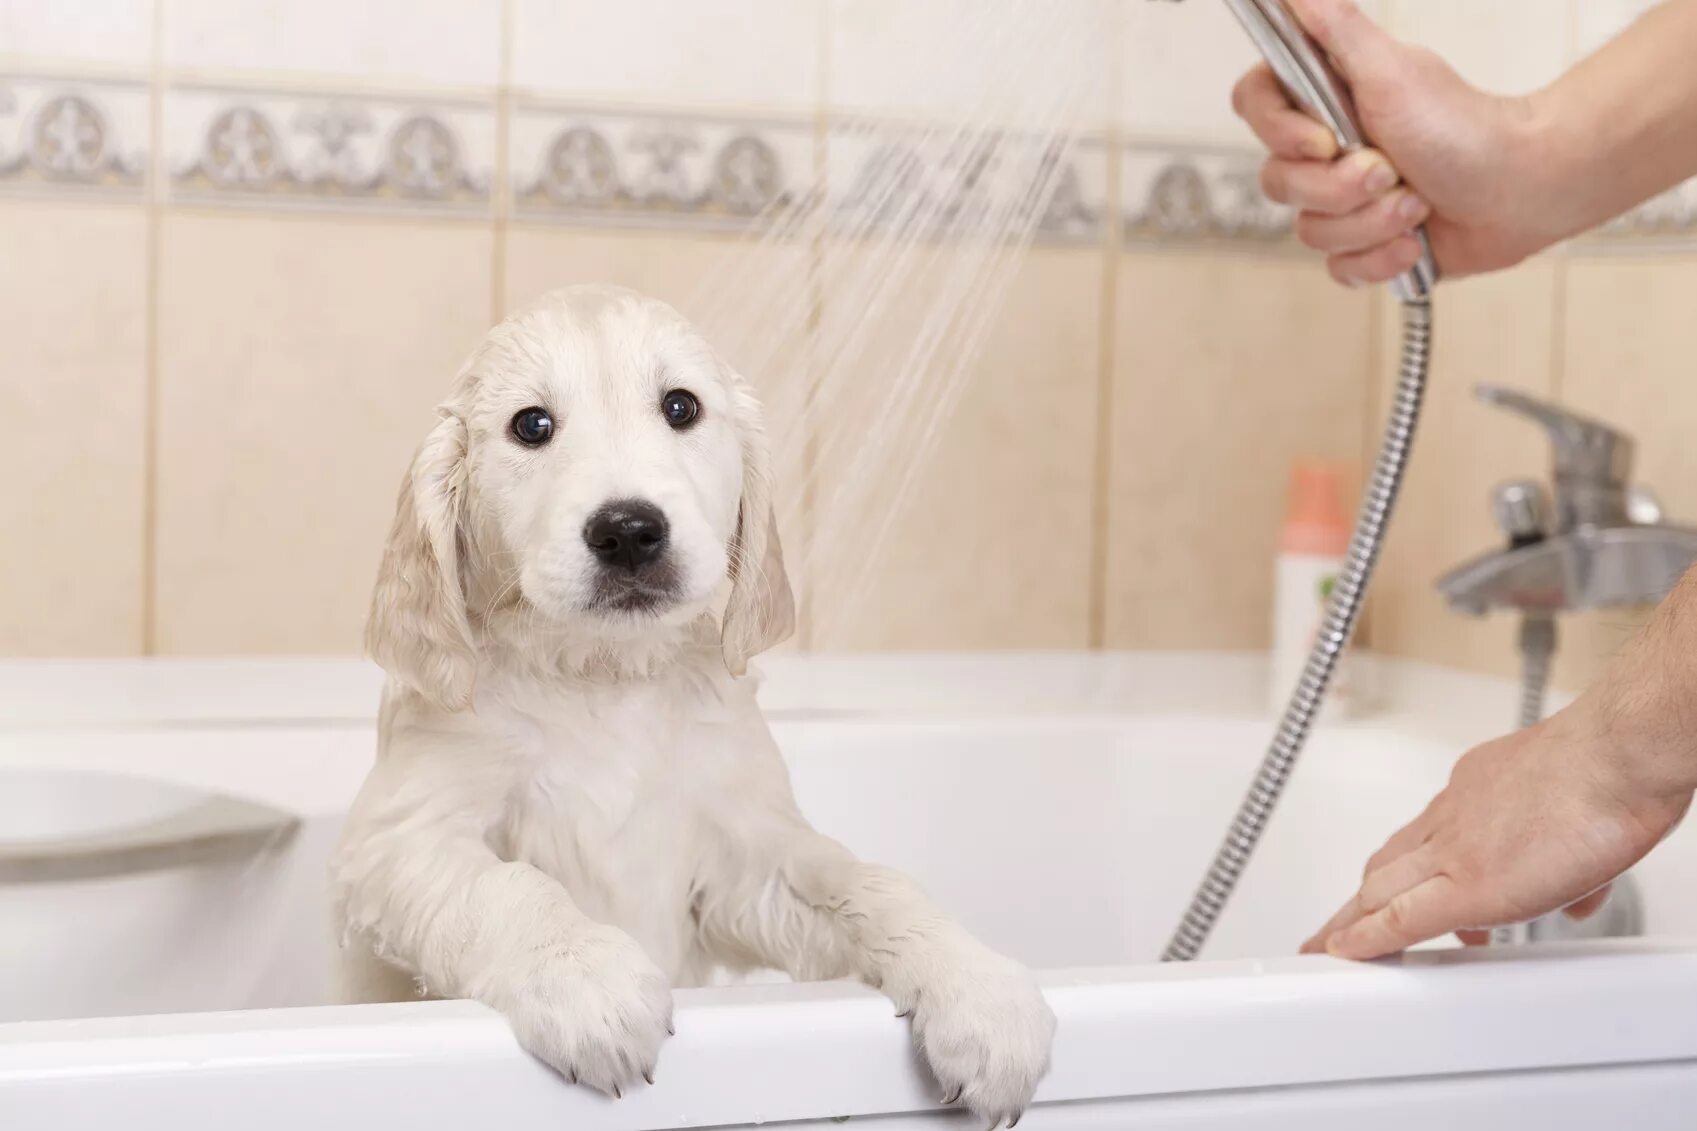 Pet clean. Мытье собаки. Собака в ванной. Для мытья собаки в ванной. Собака моется.